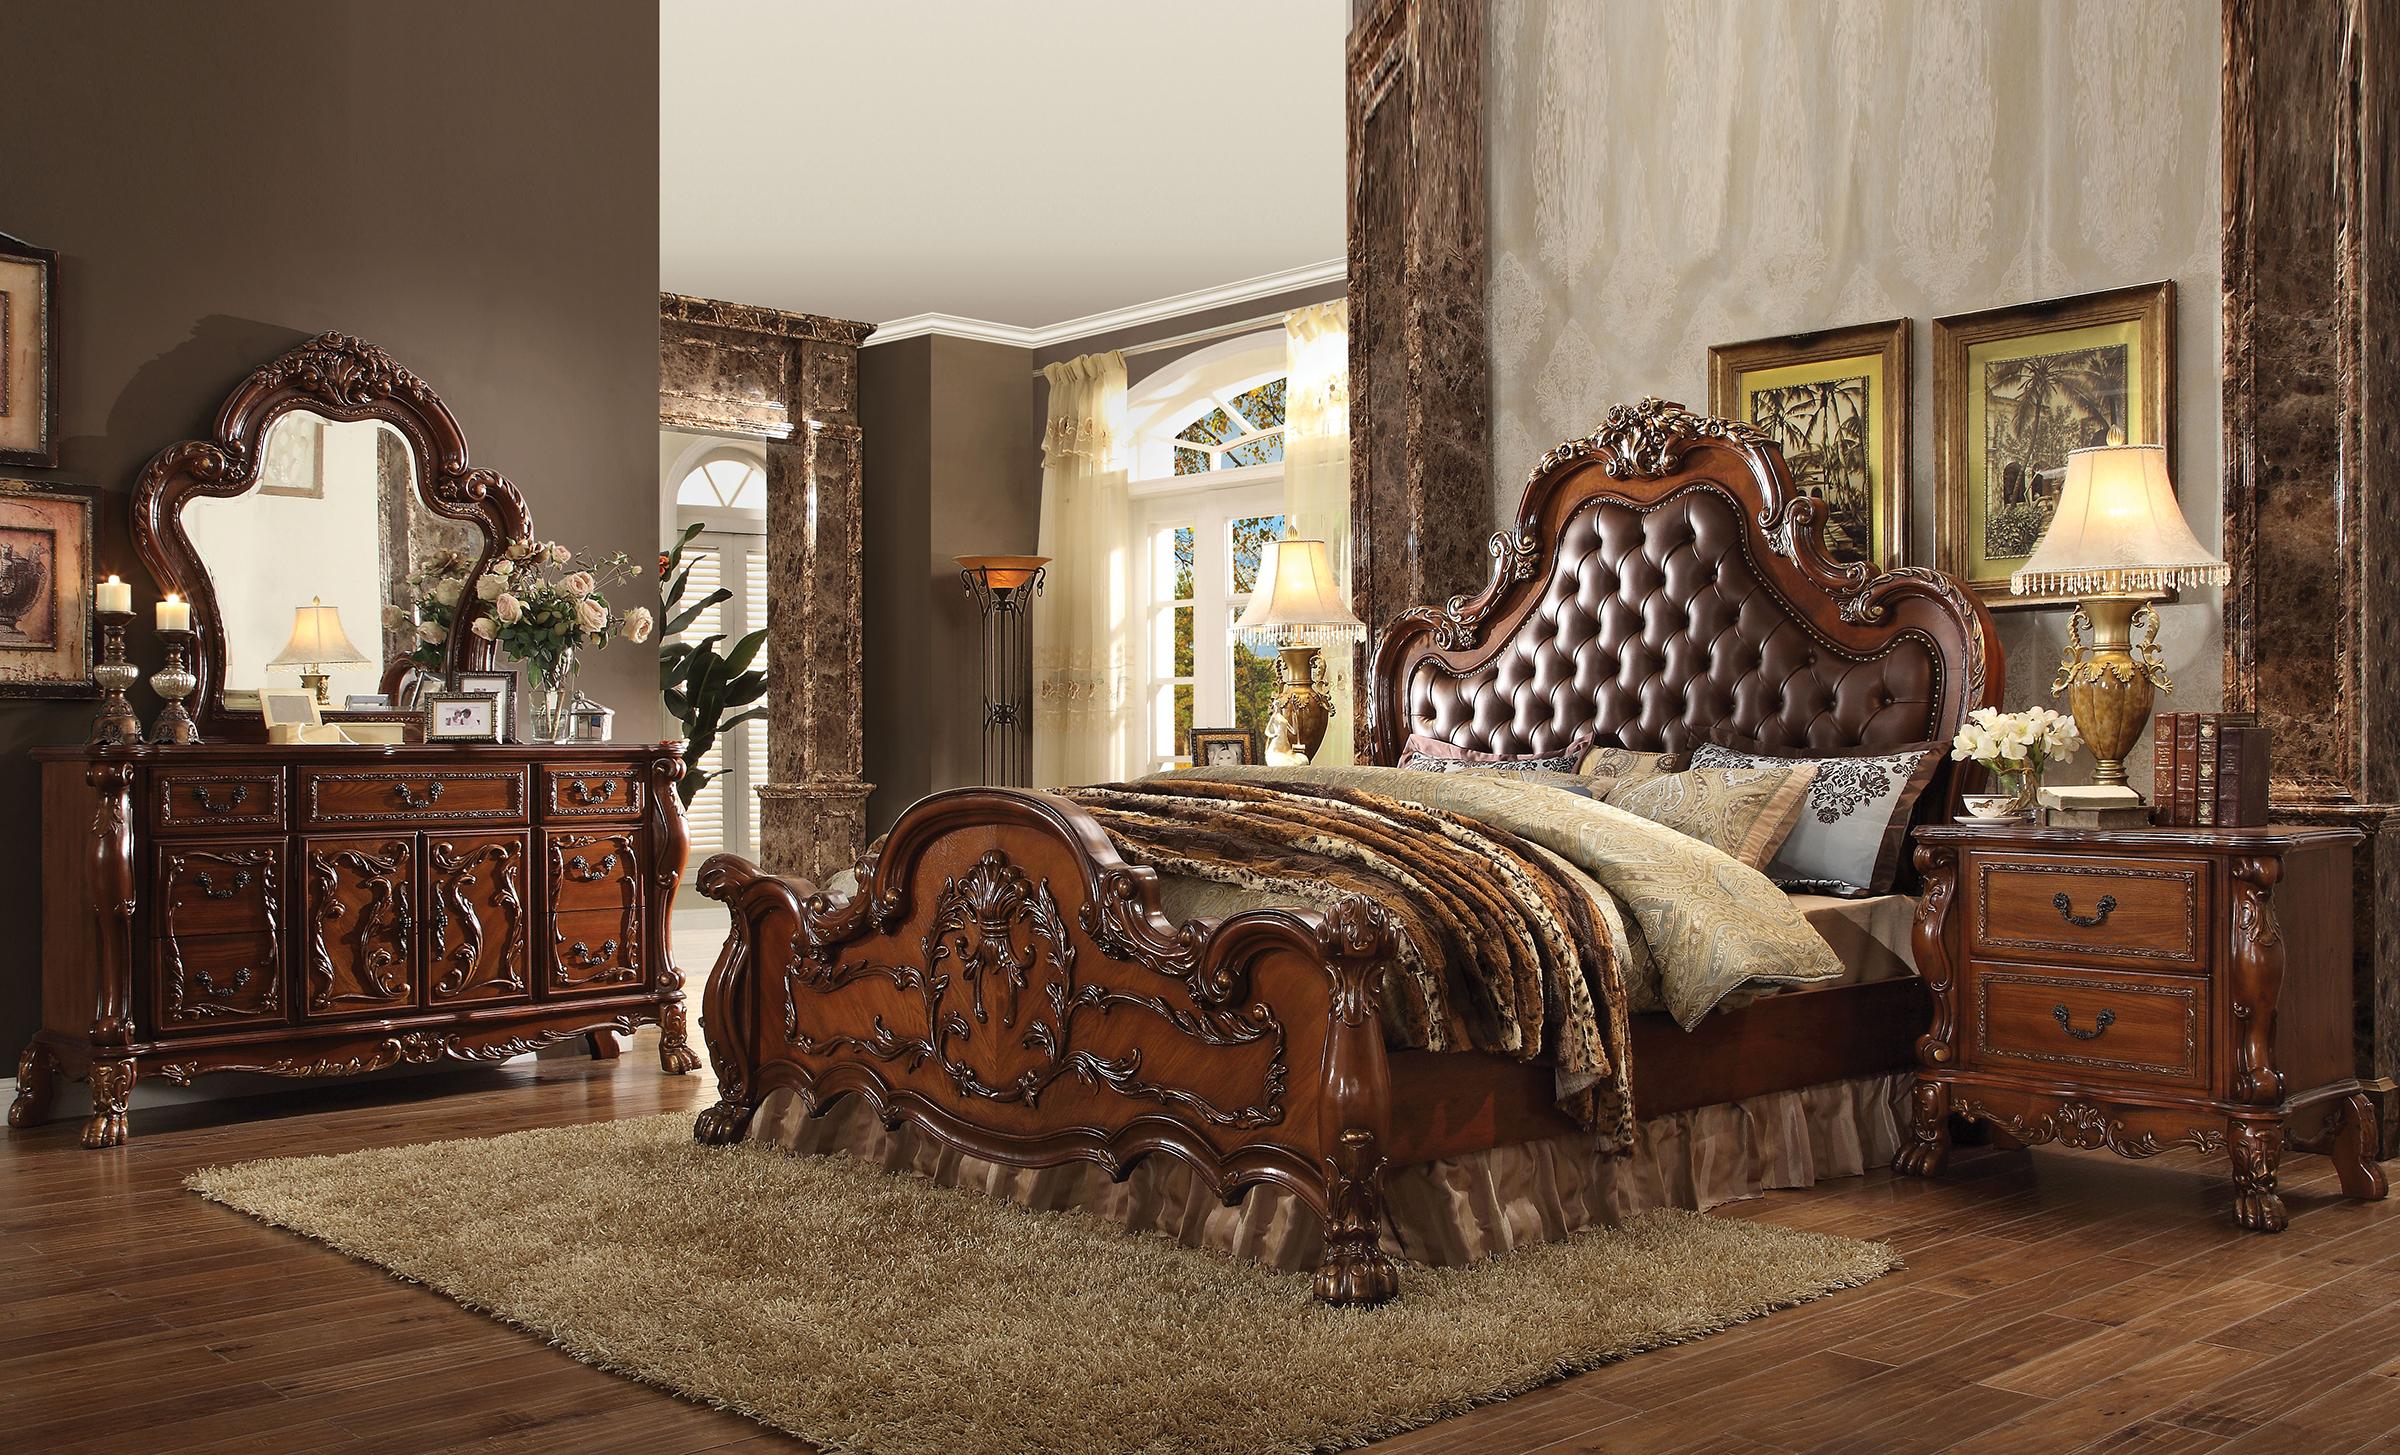 

    
Tufted Cherry Oak Queen Bedroom Set 3Pcs Dresden 23140Q Acme Victorian Classic
